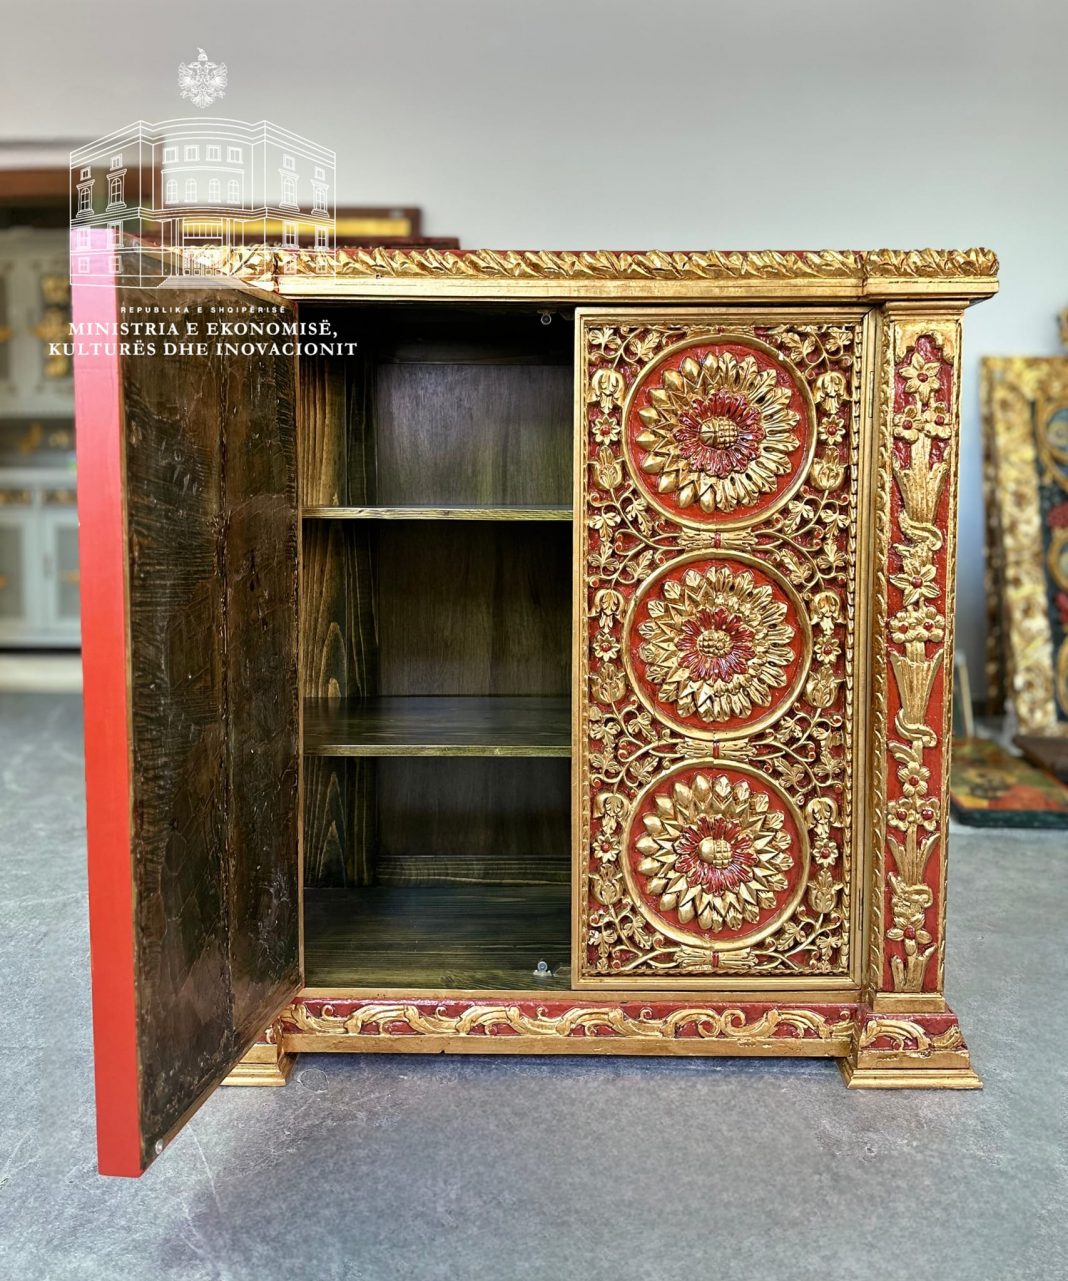 Objekte të trashëgimisë kulturore të transformuara në “mobilje”, IKRTK: Përbën vepër penale